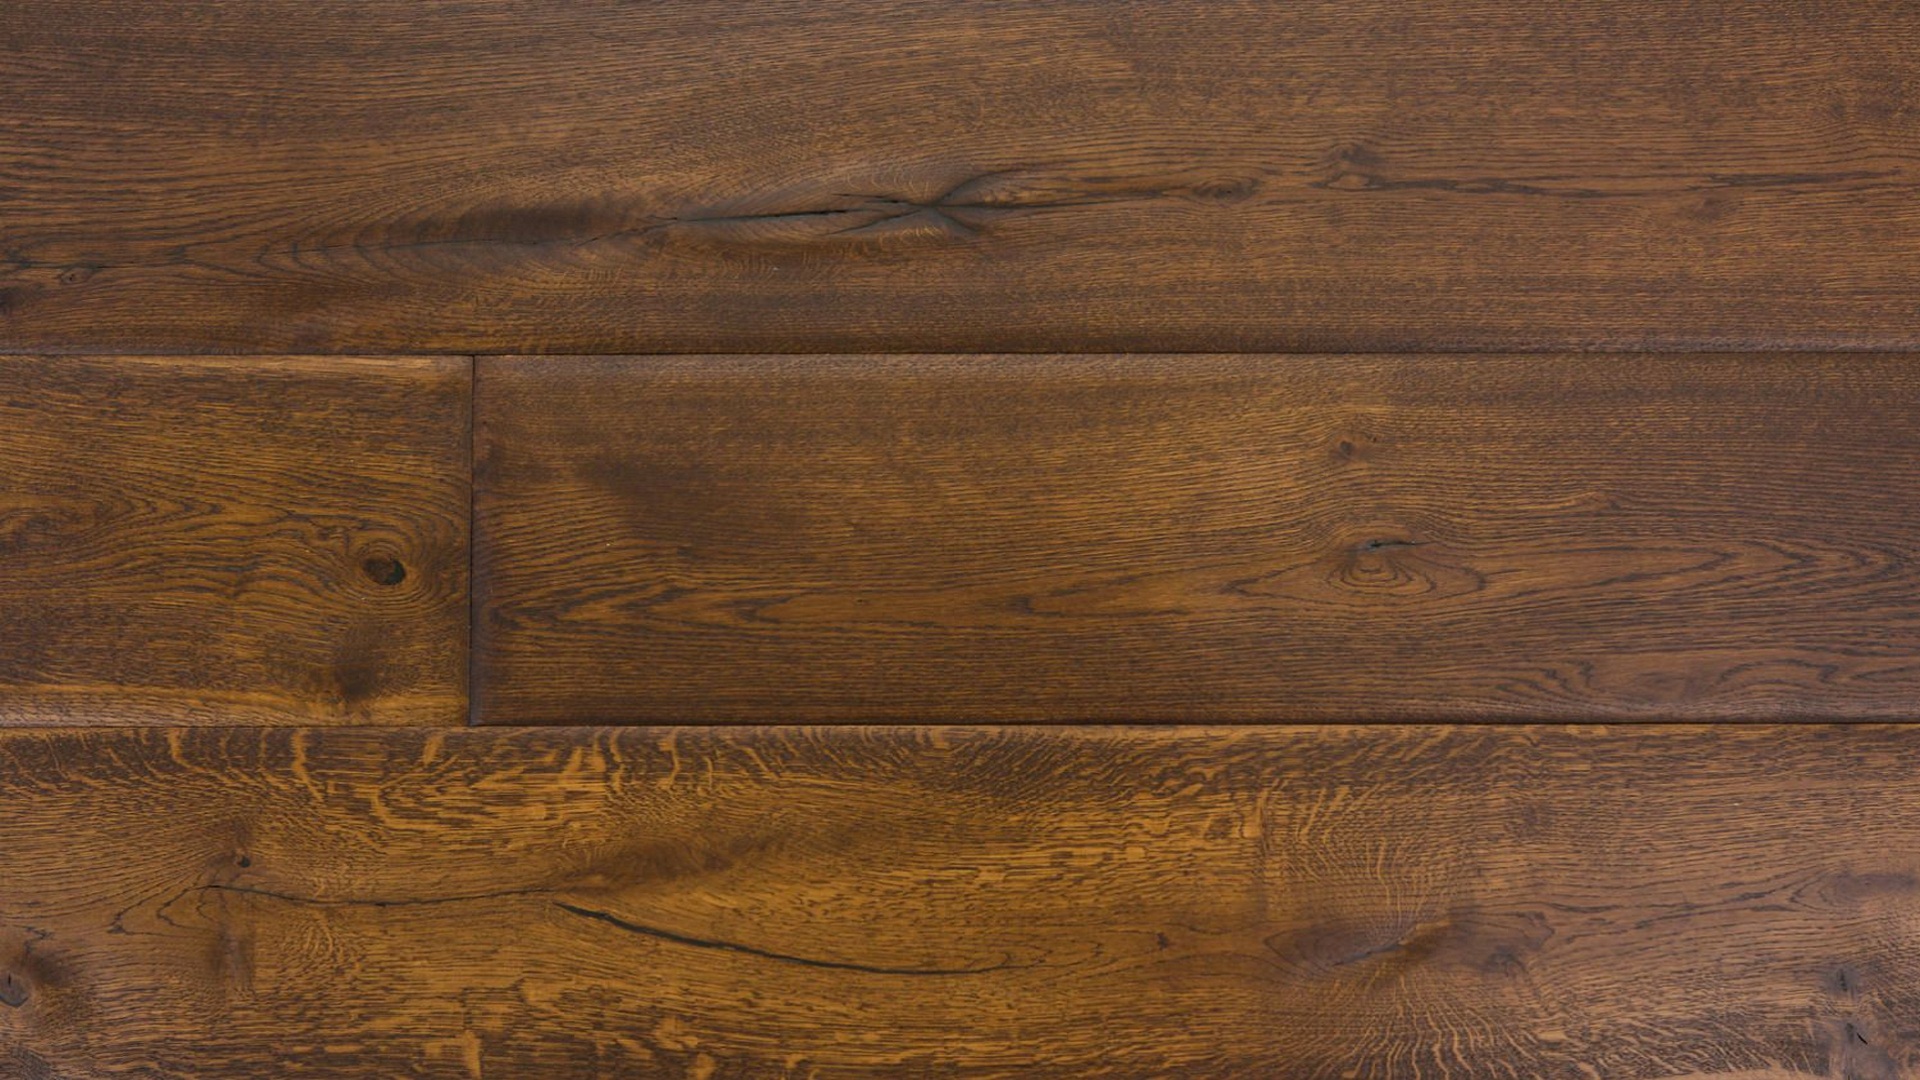 Wallpaper Surface, texture, wood desk